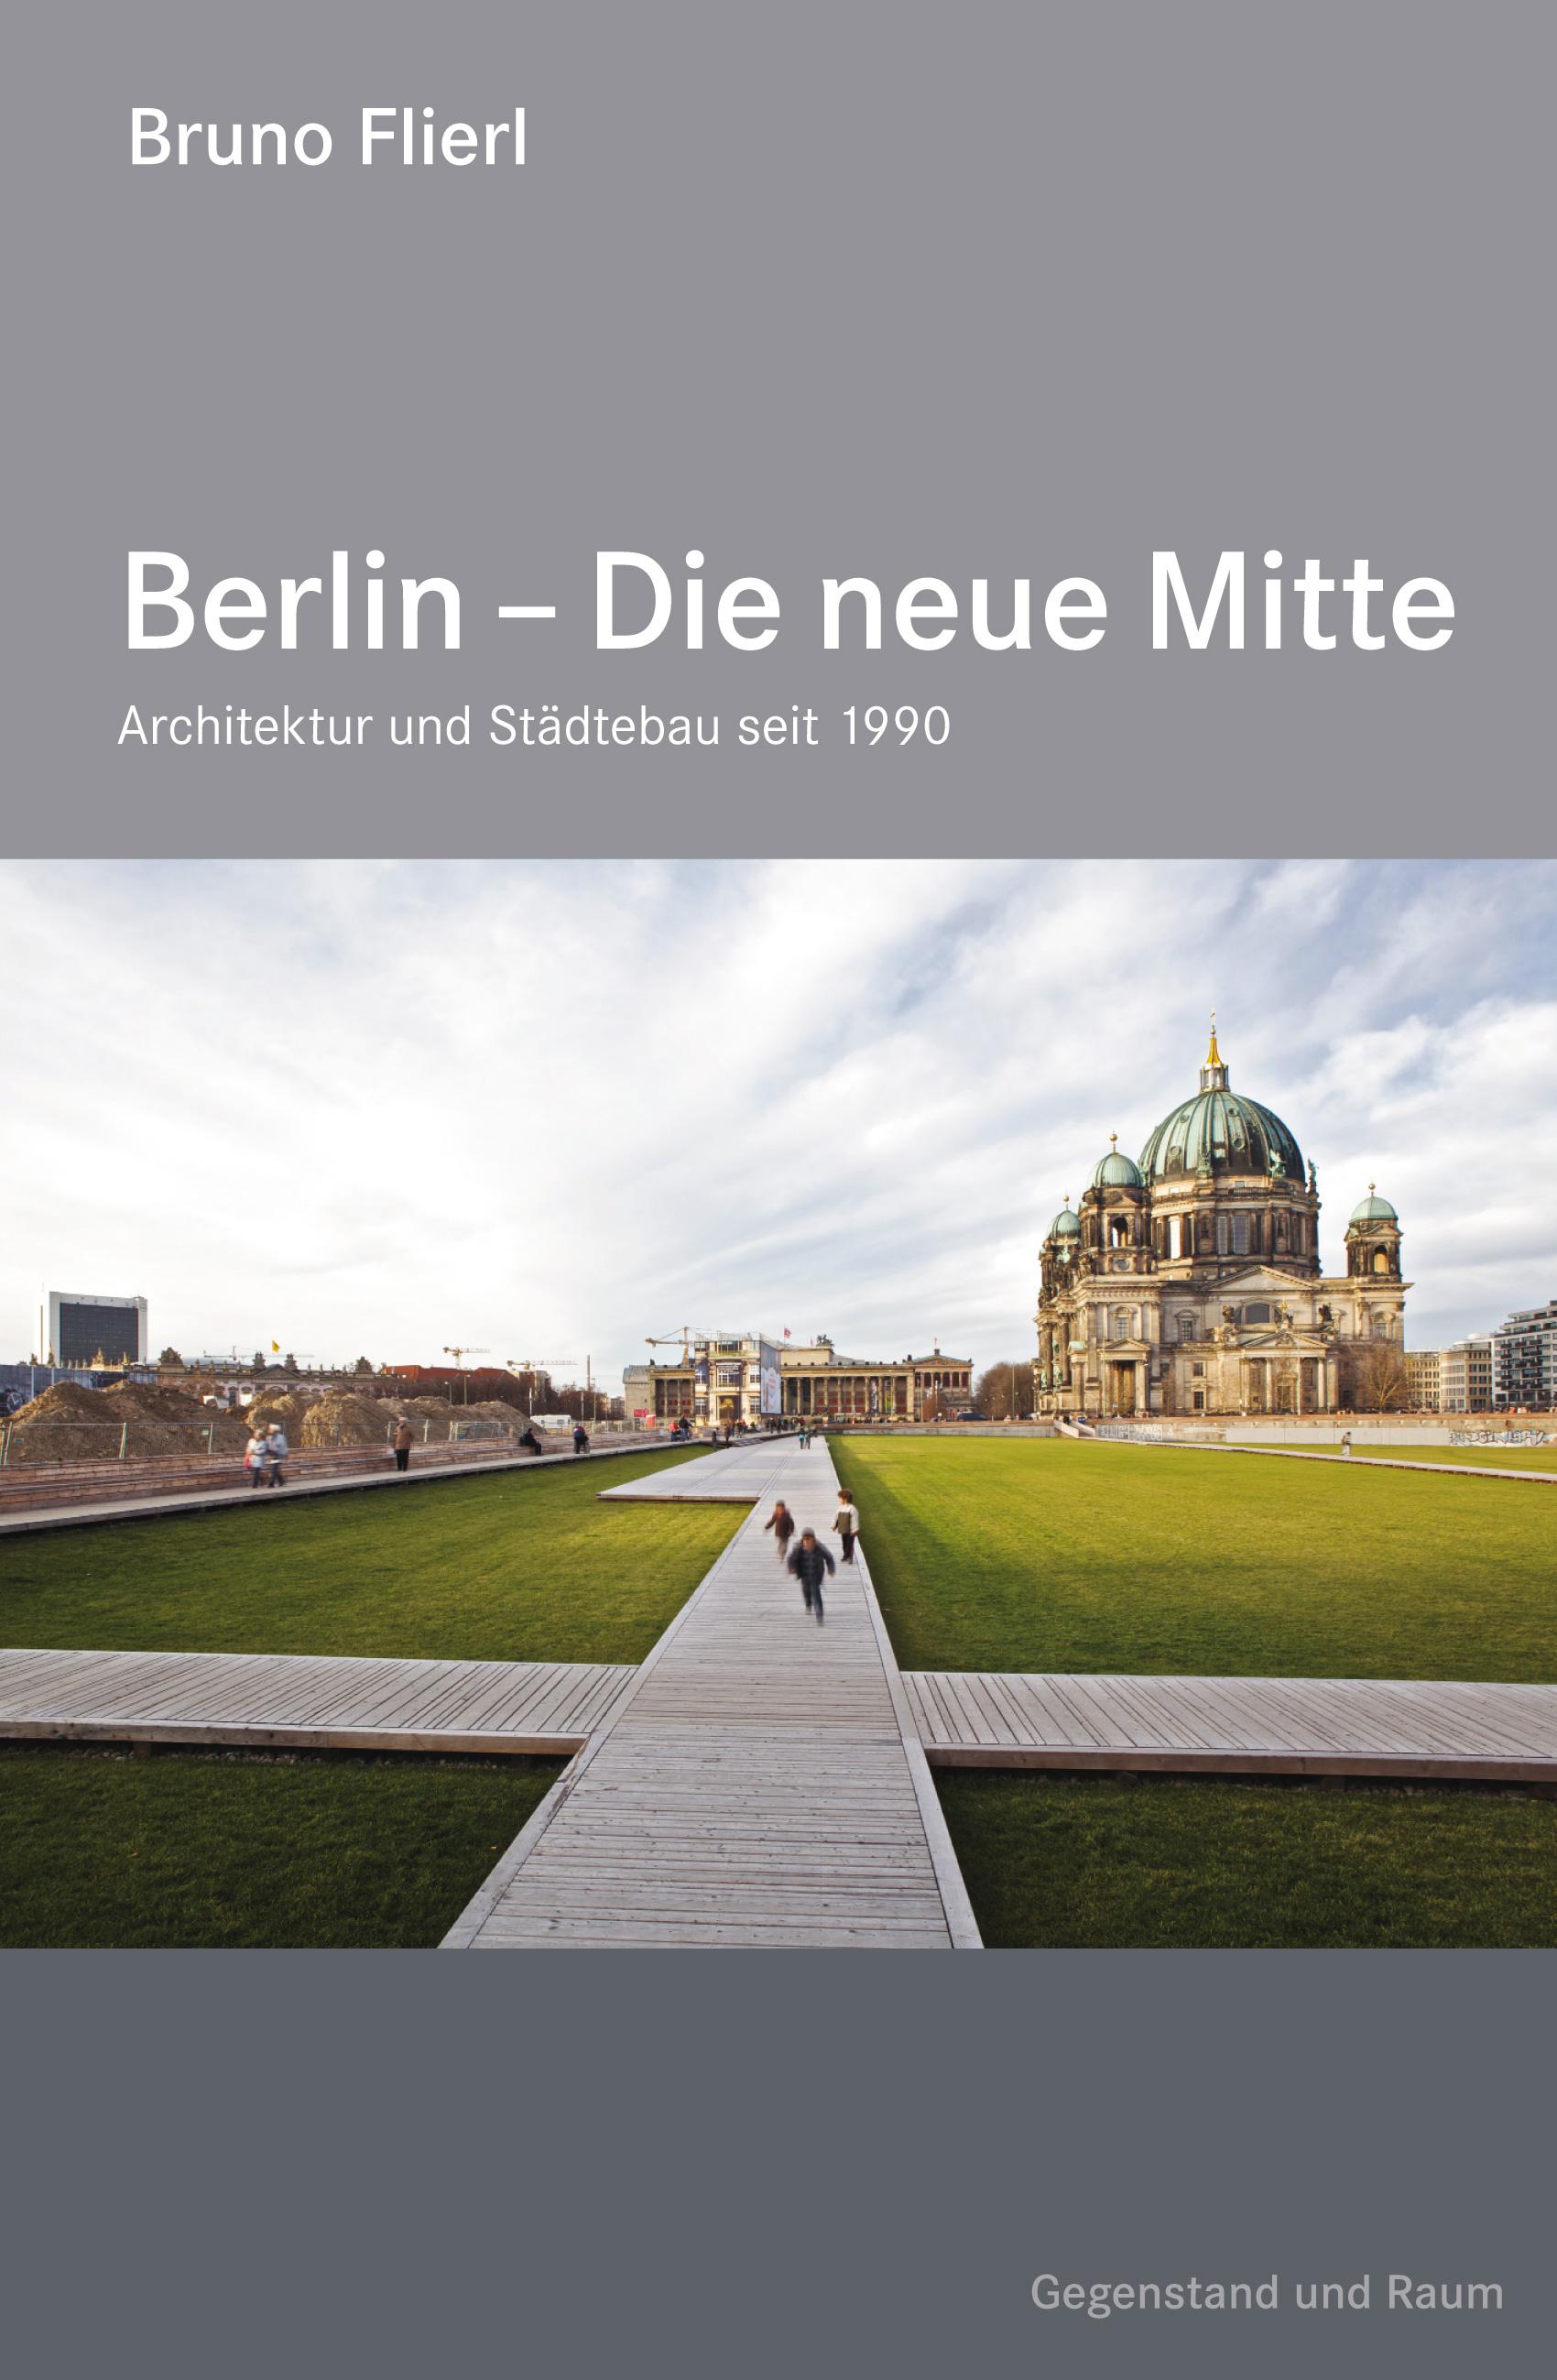 Edition Gegenstand und Raum "Berlin – Die neue Mitte"